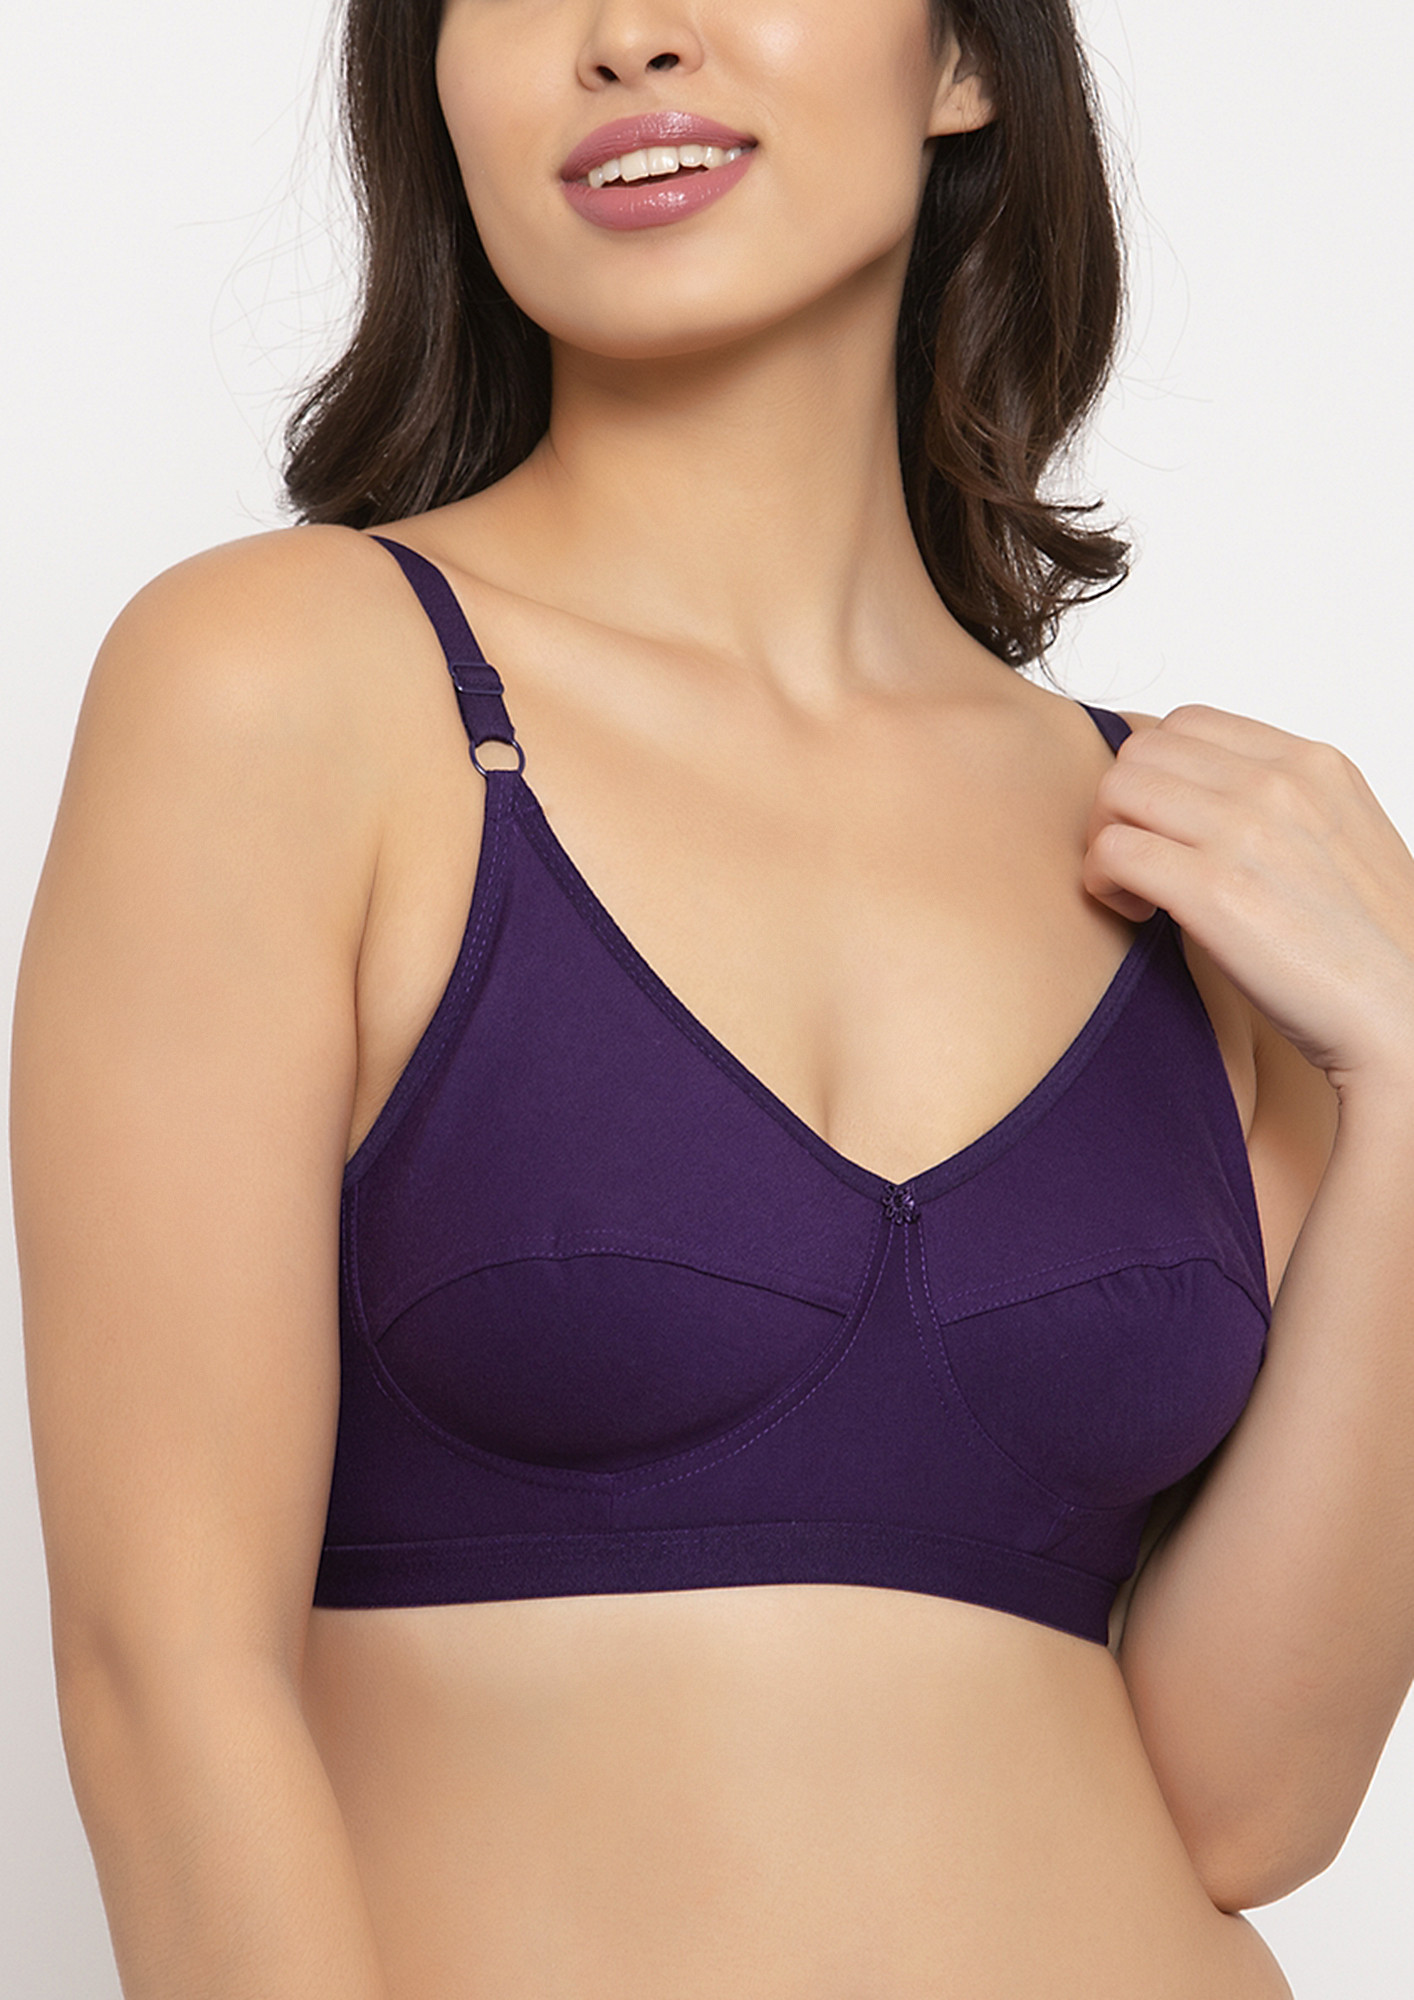 Buy online Purple Cotton Blend Tshirt Bra from lingerie for Women